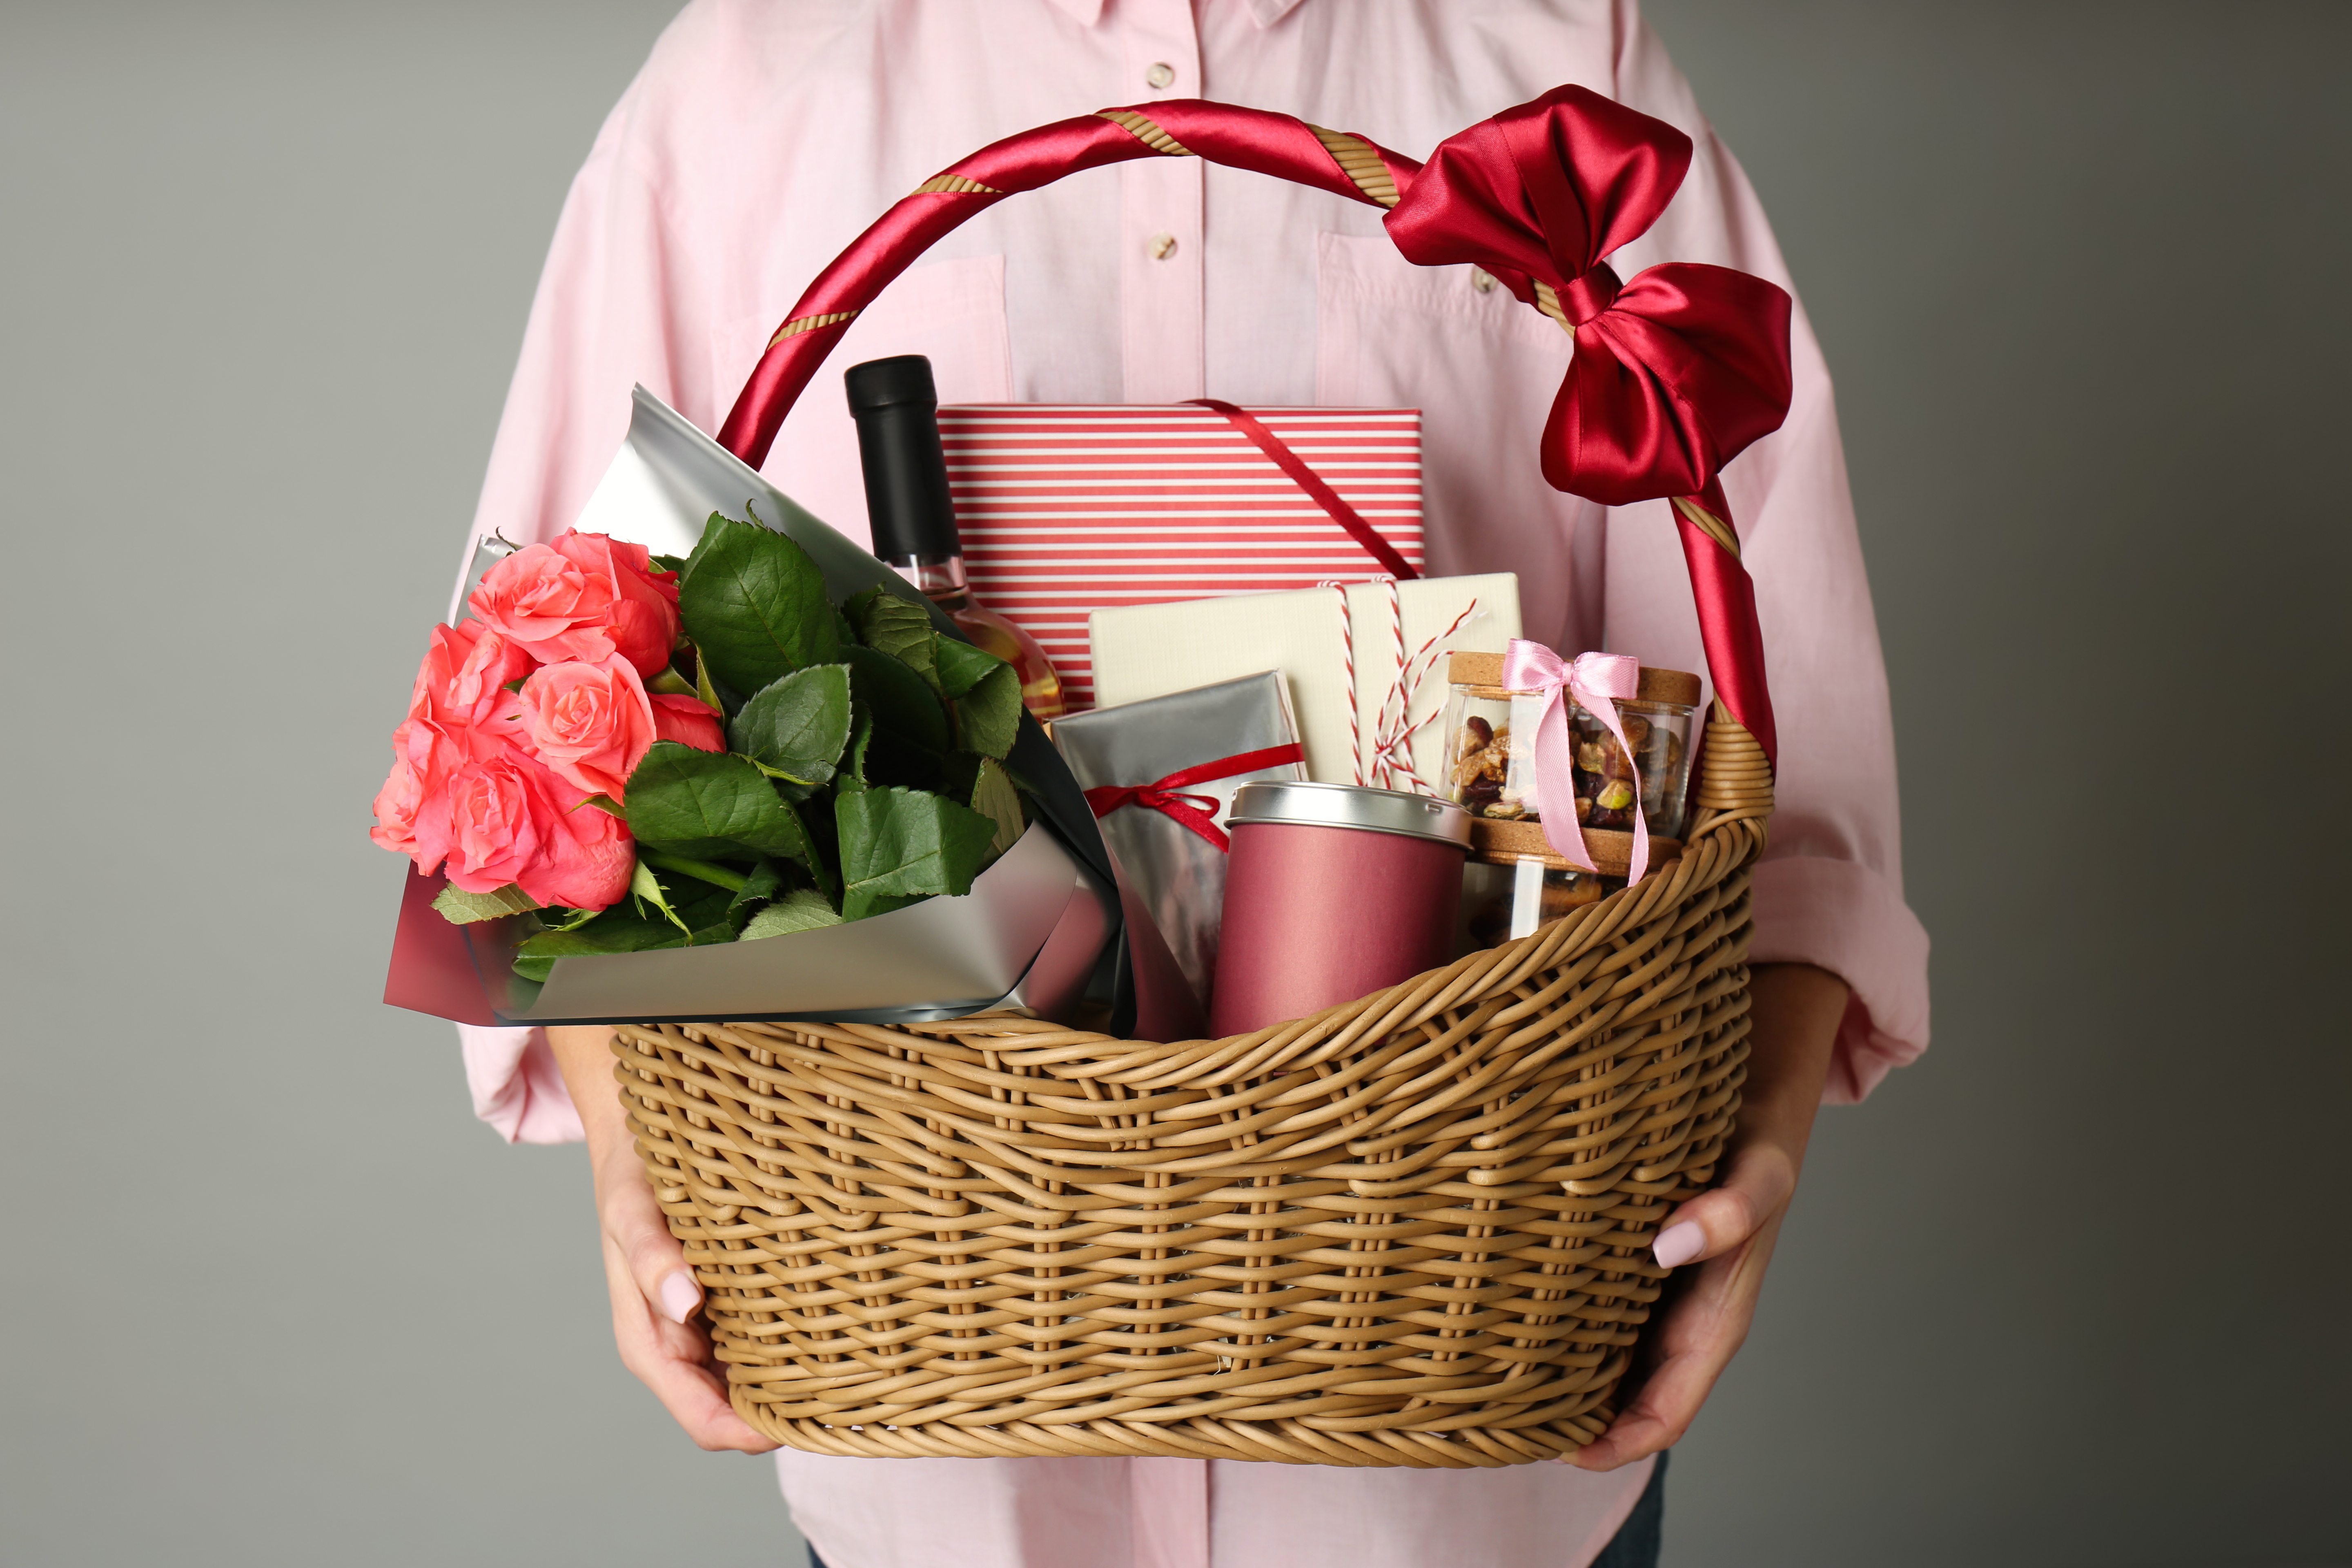 Une femme tenant un panier rempli de cadeaux | Source : Shutterstock